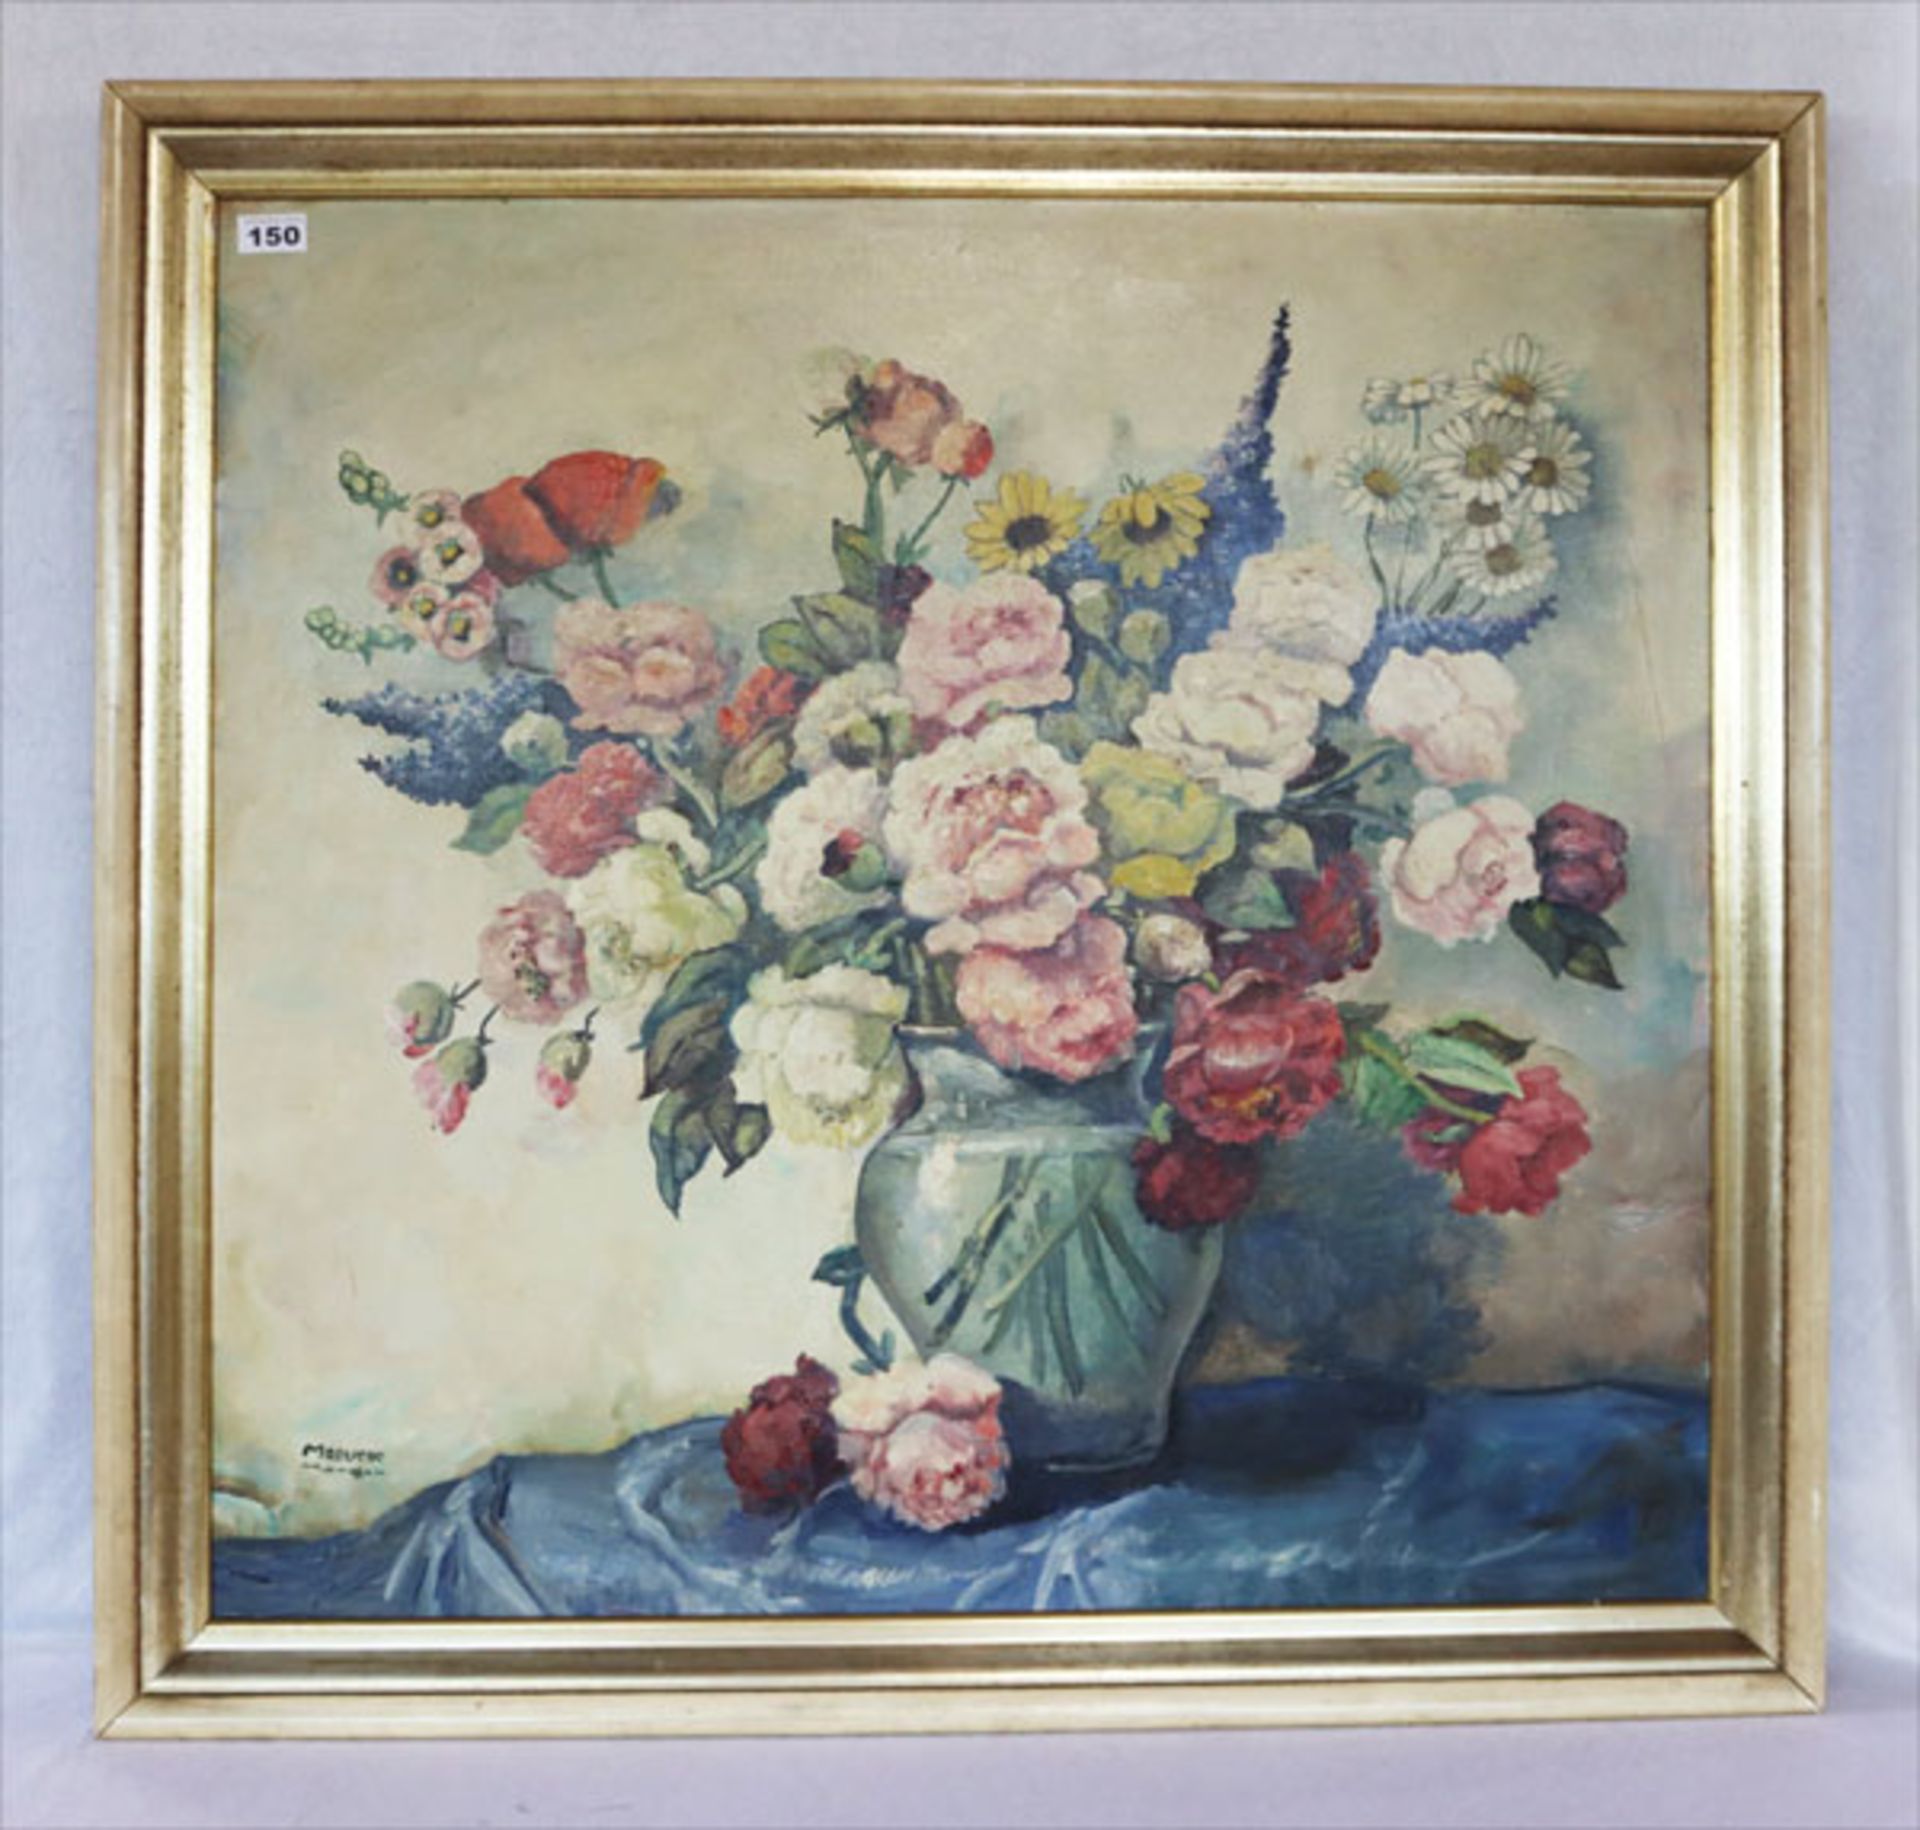 Gemälde ÖL/LW 'Bunter Blumenstrauß in Vase', signiert Maeucer ?, München, LW teils beschädigt,